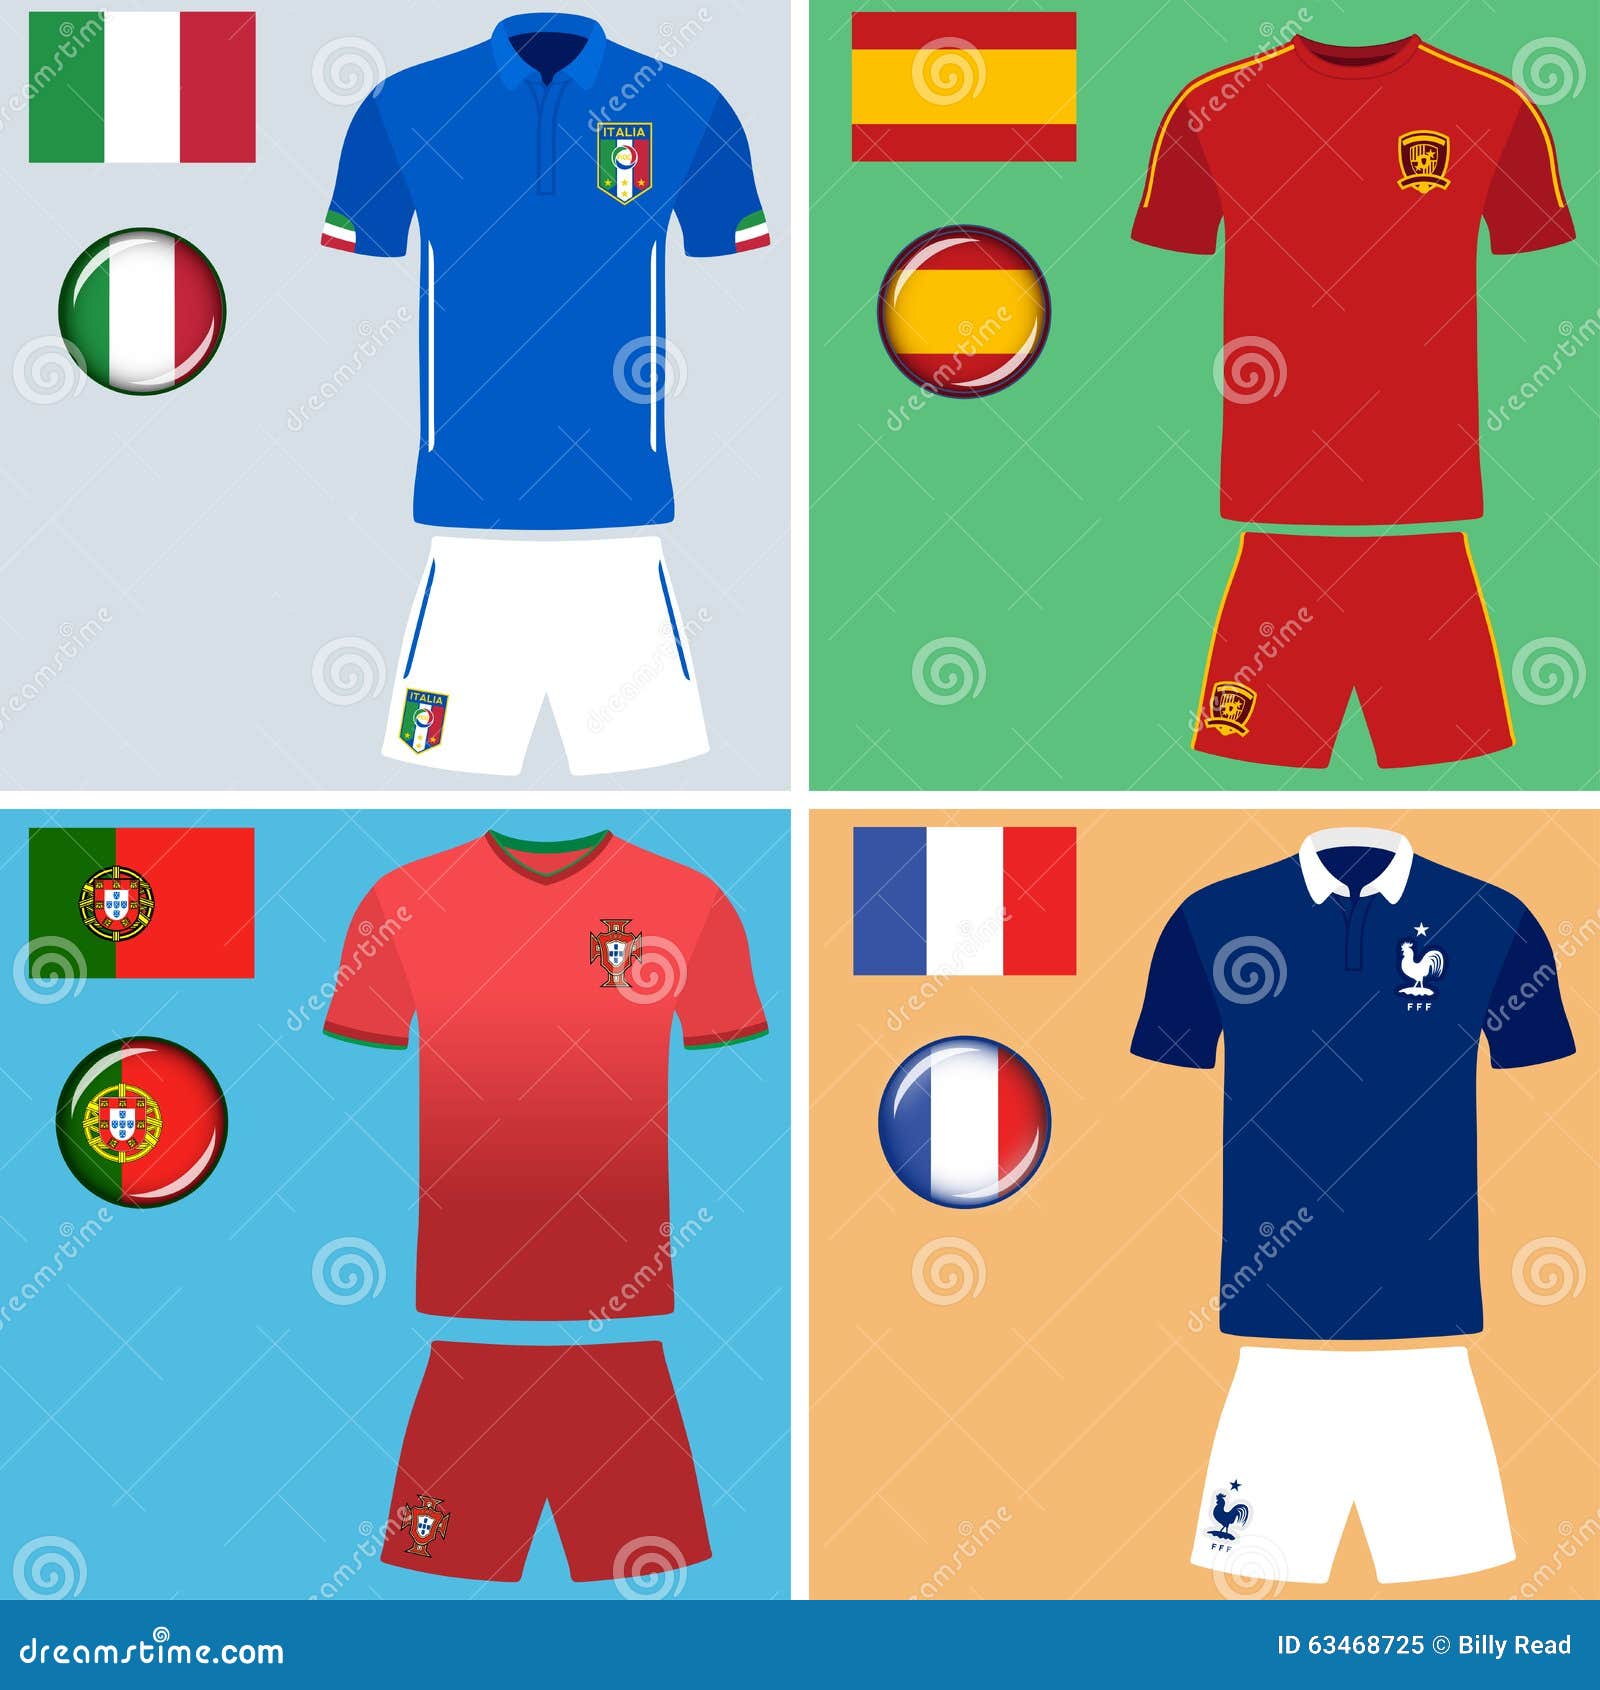 european football jerseys